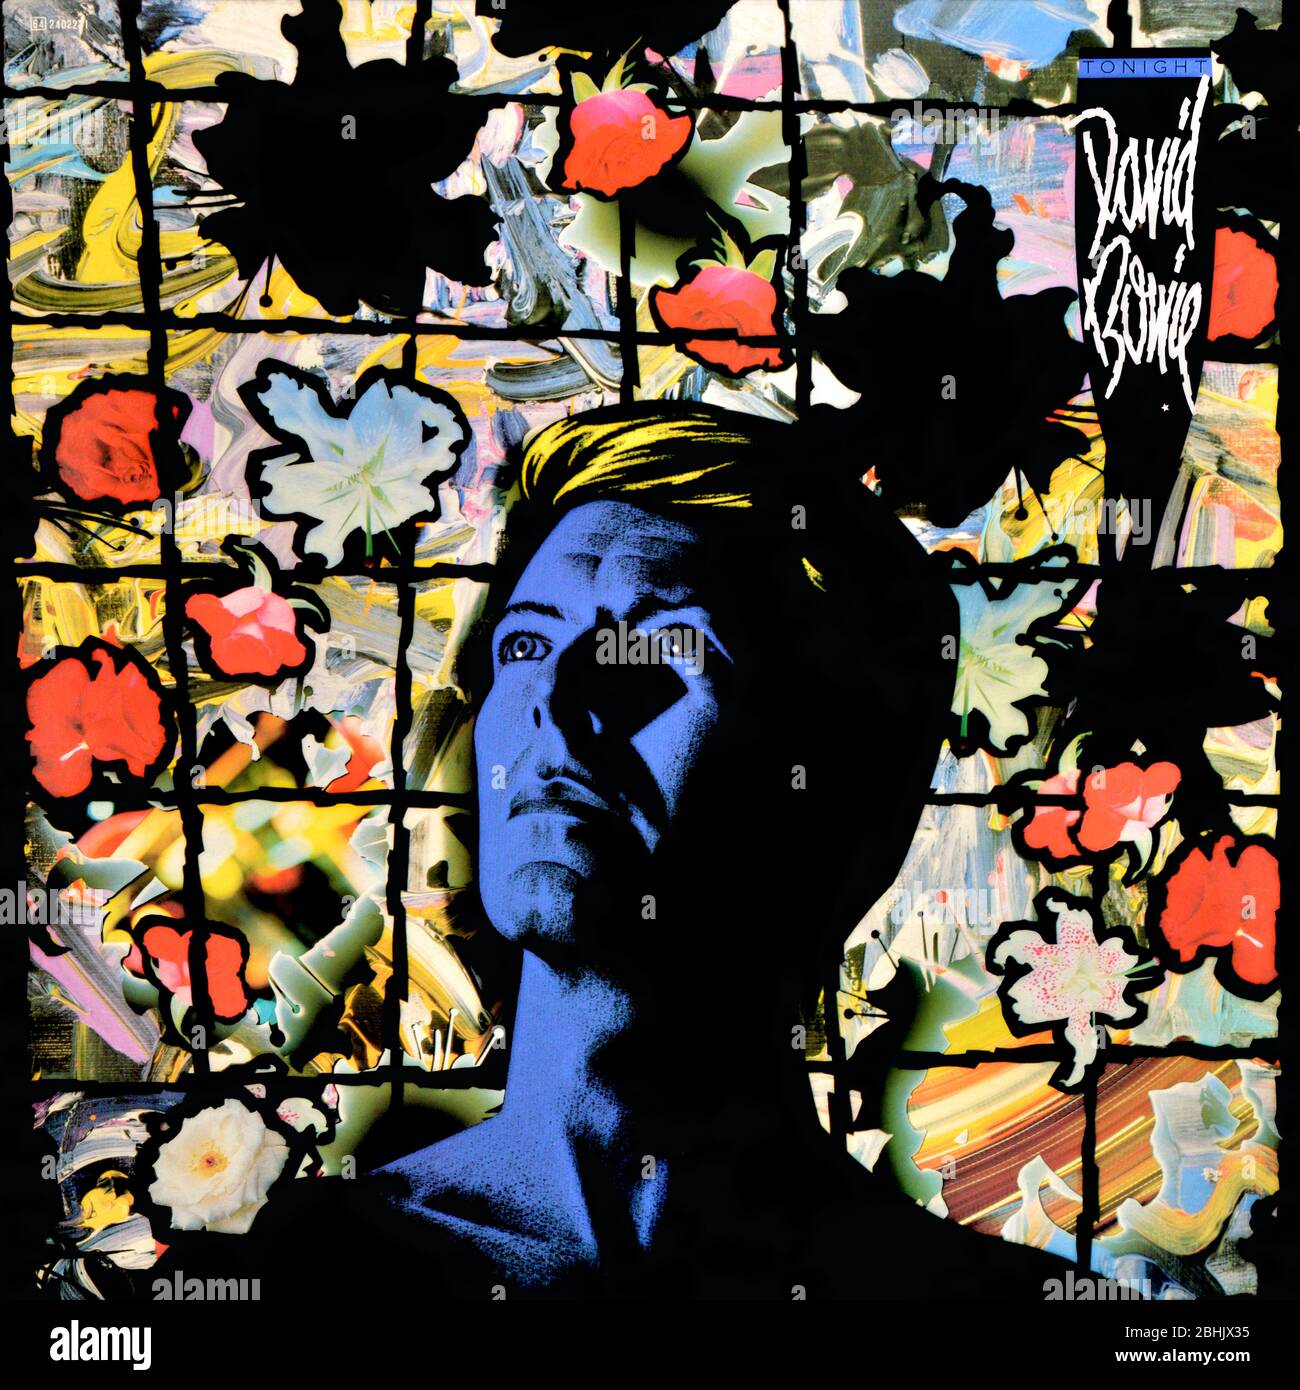 David Bowie Album Cover Art